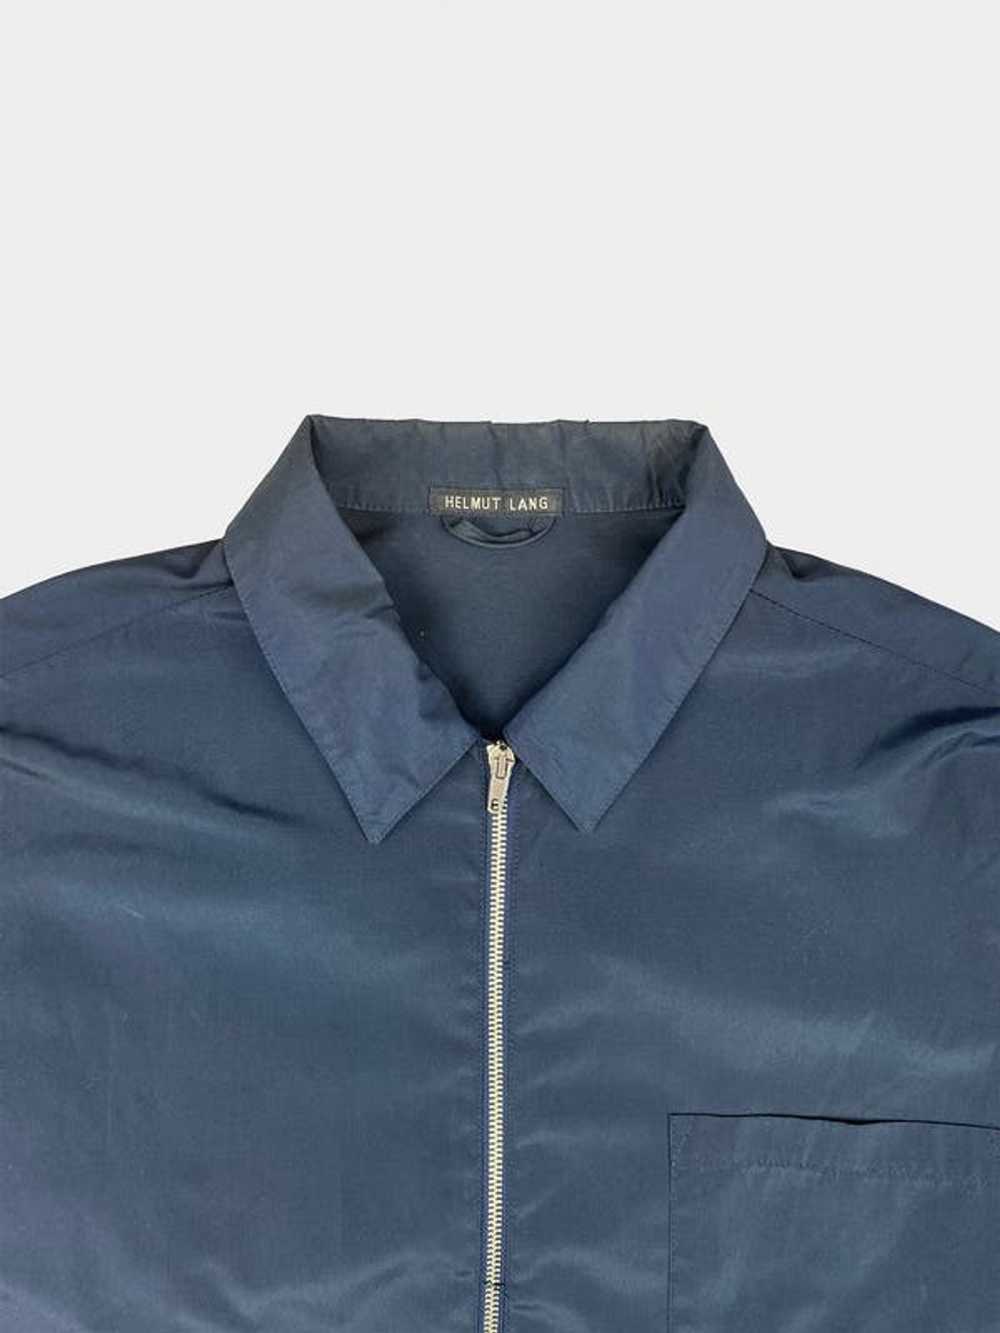 Helmut Lang Blue Pocket Cotton Jacket - image 3